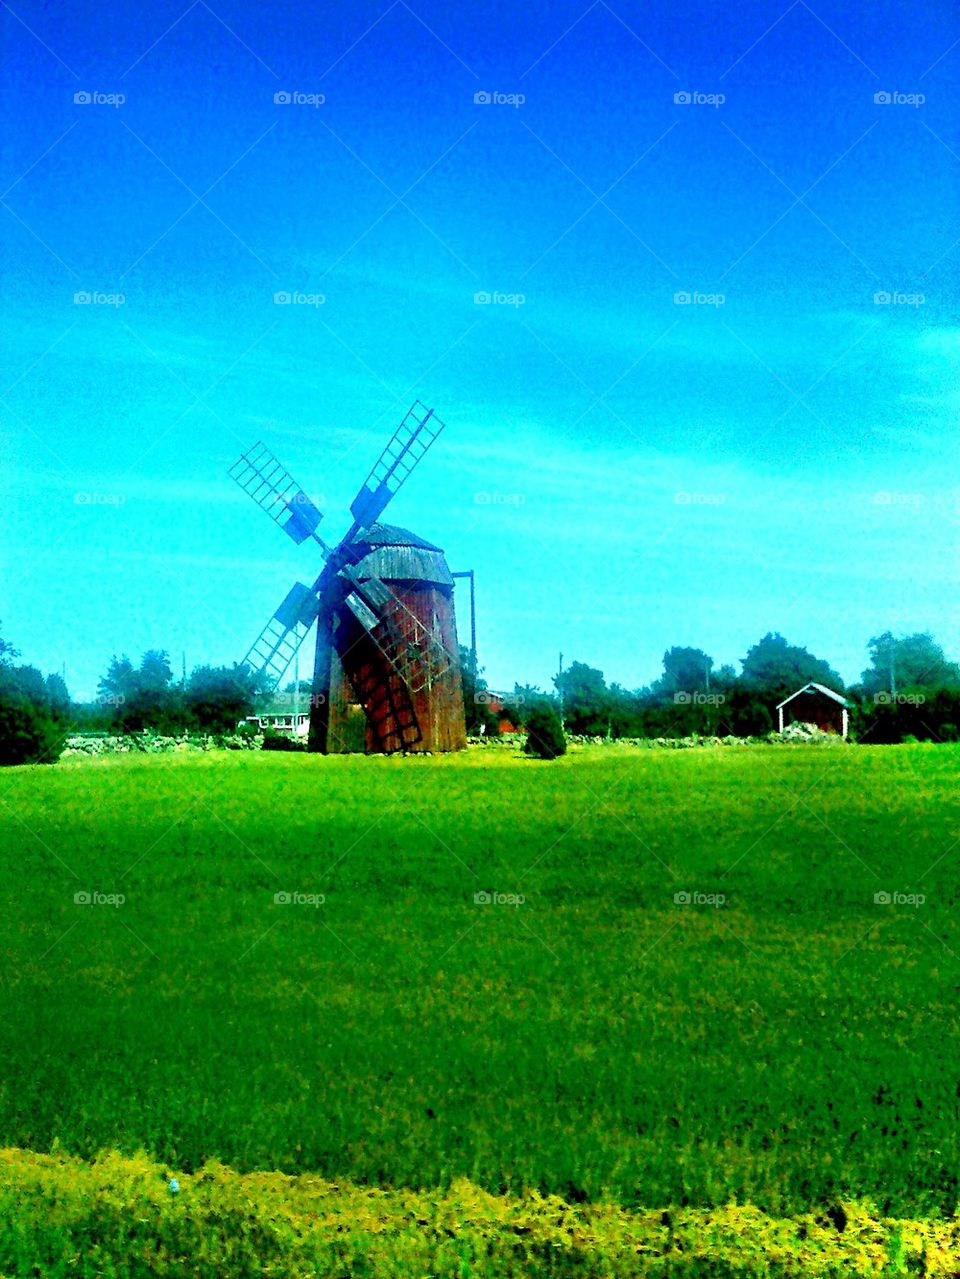 Beautiful windmill!